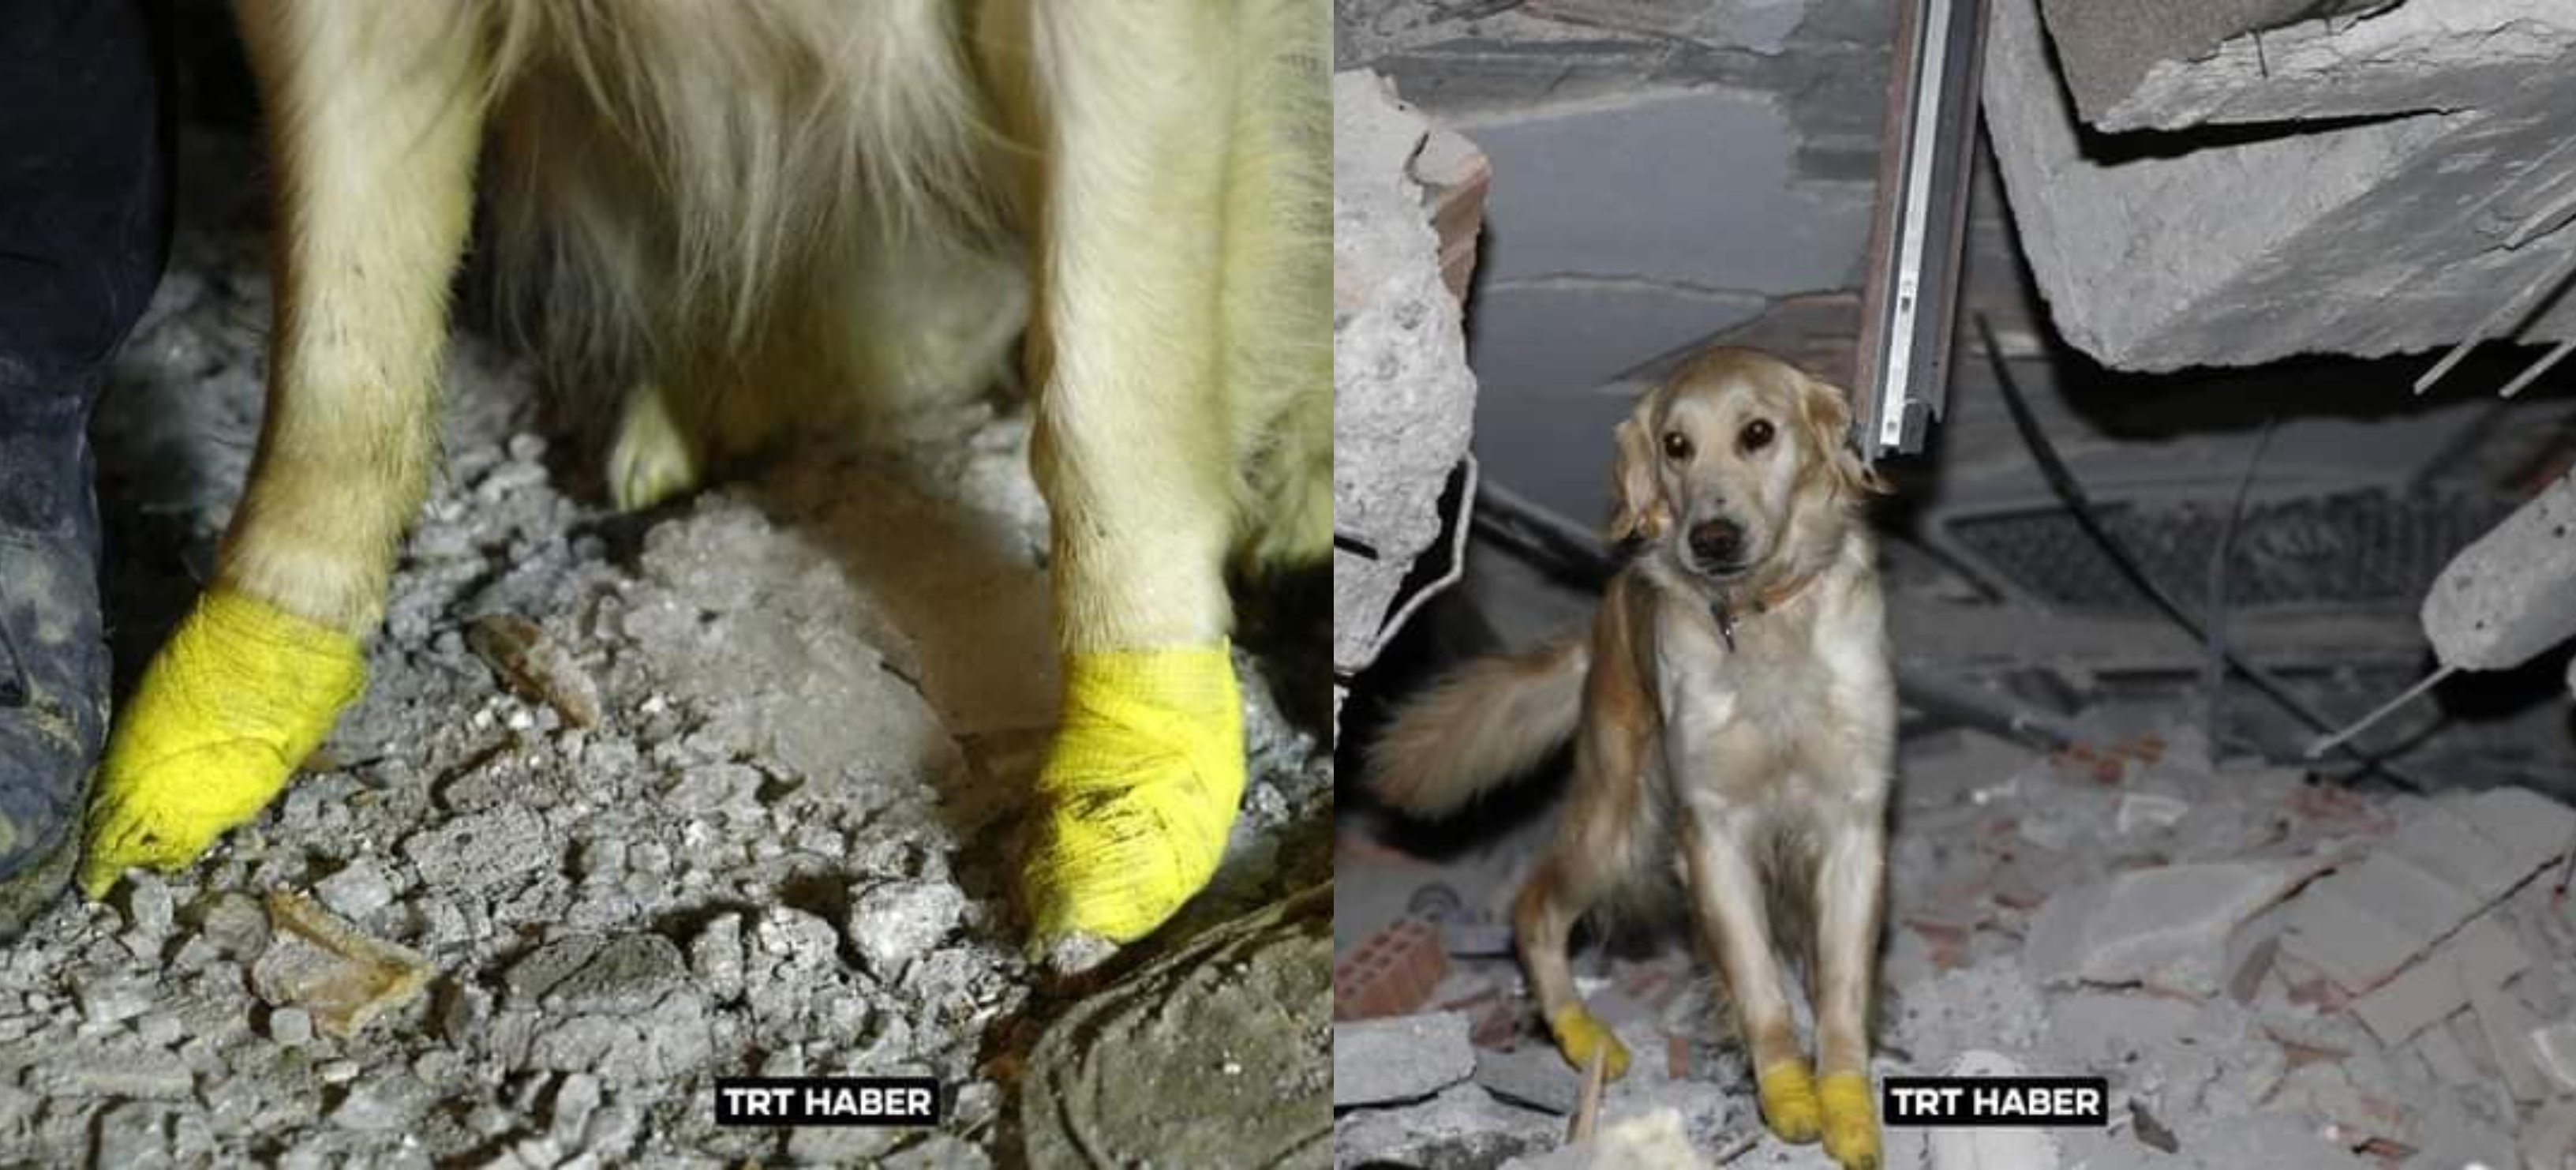 მაშველი ძაღლი, რომელმაც 5 ადამიანი გადაარჩინა, თათების დაზიანების მიუხედავად მუშაობას განაგრძობს (ფოტოები)